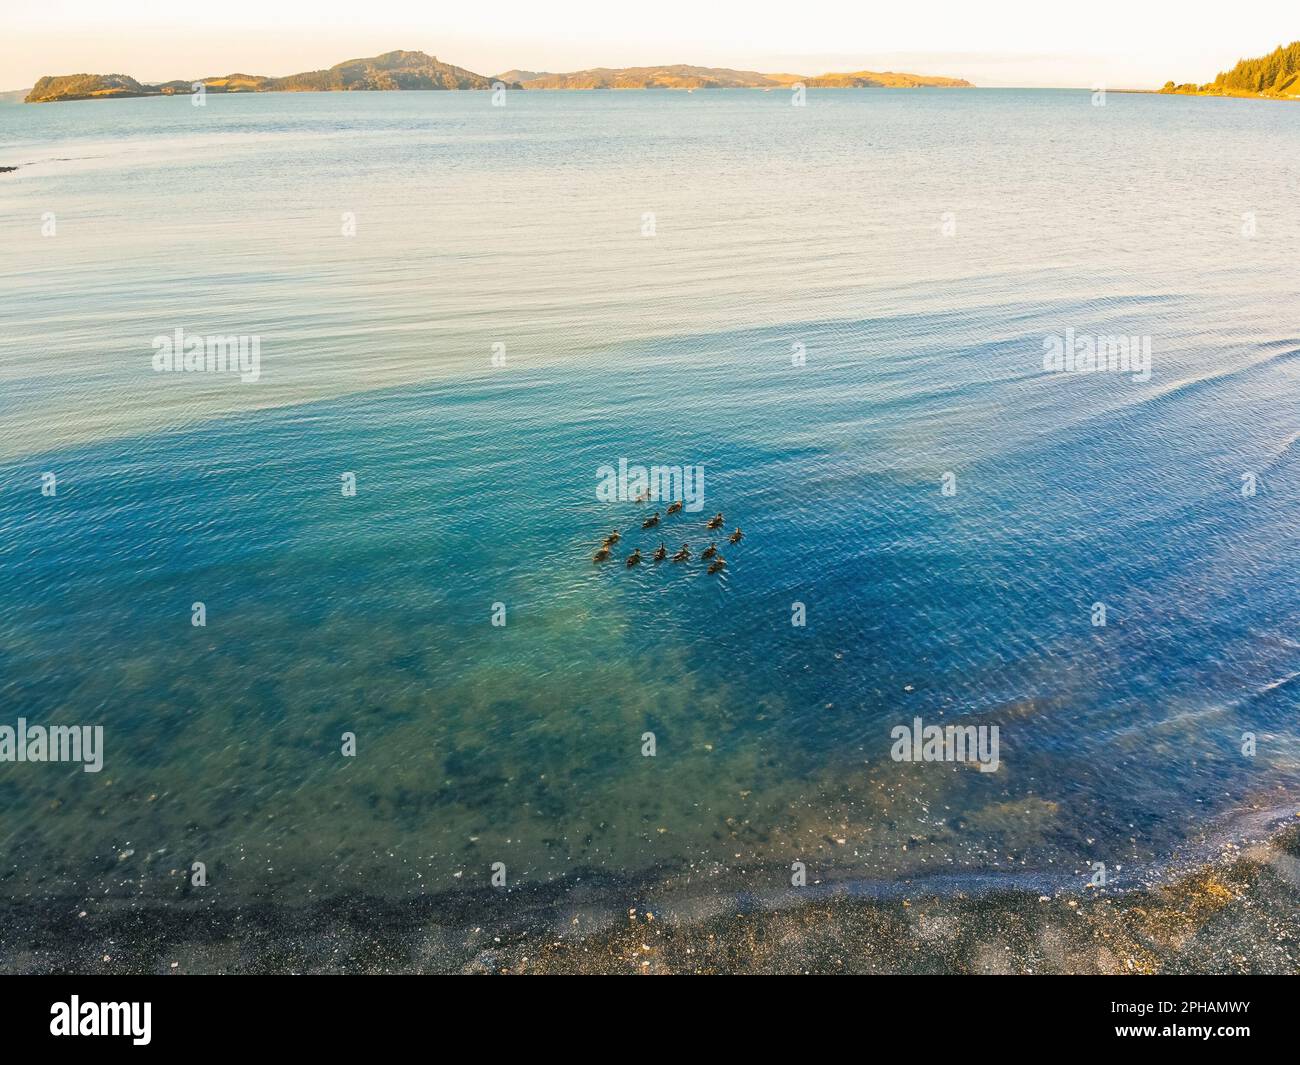 Kawakawa Bay Beach, New Zealand in summer Stock Photo